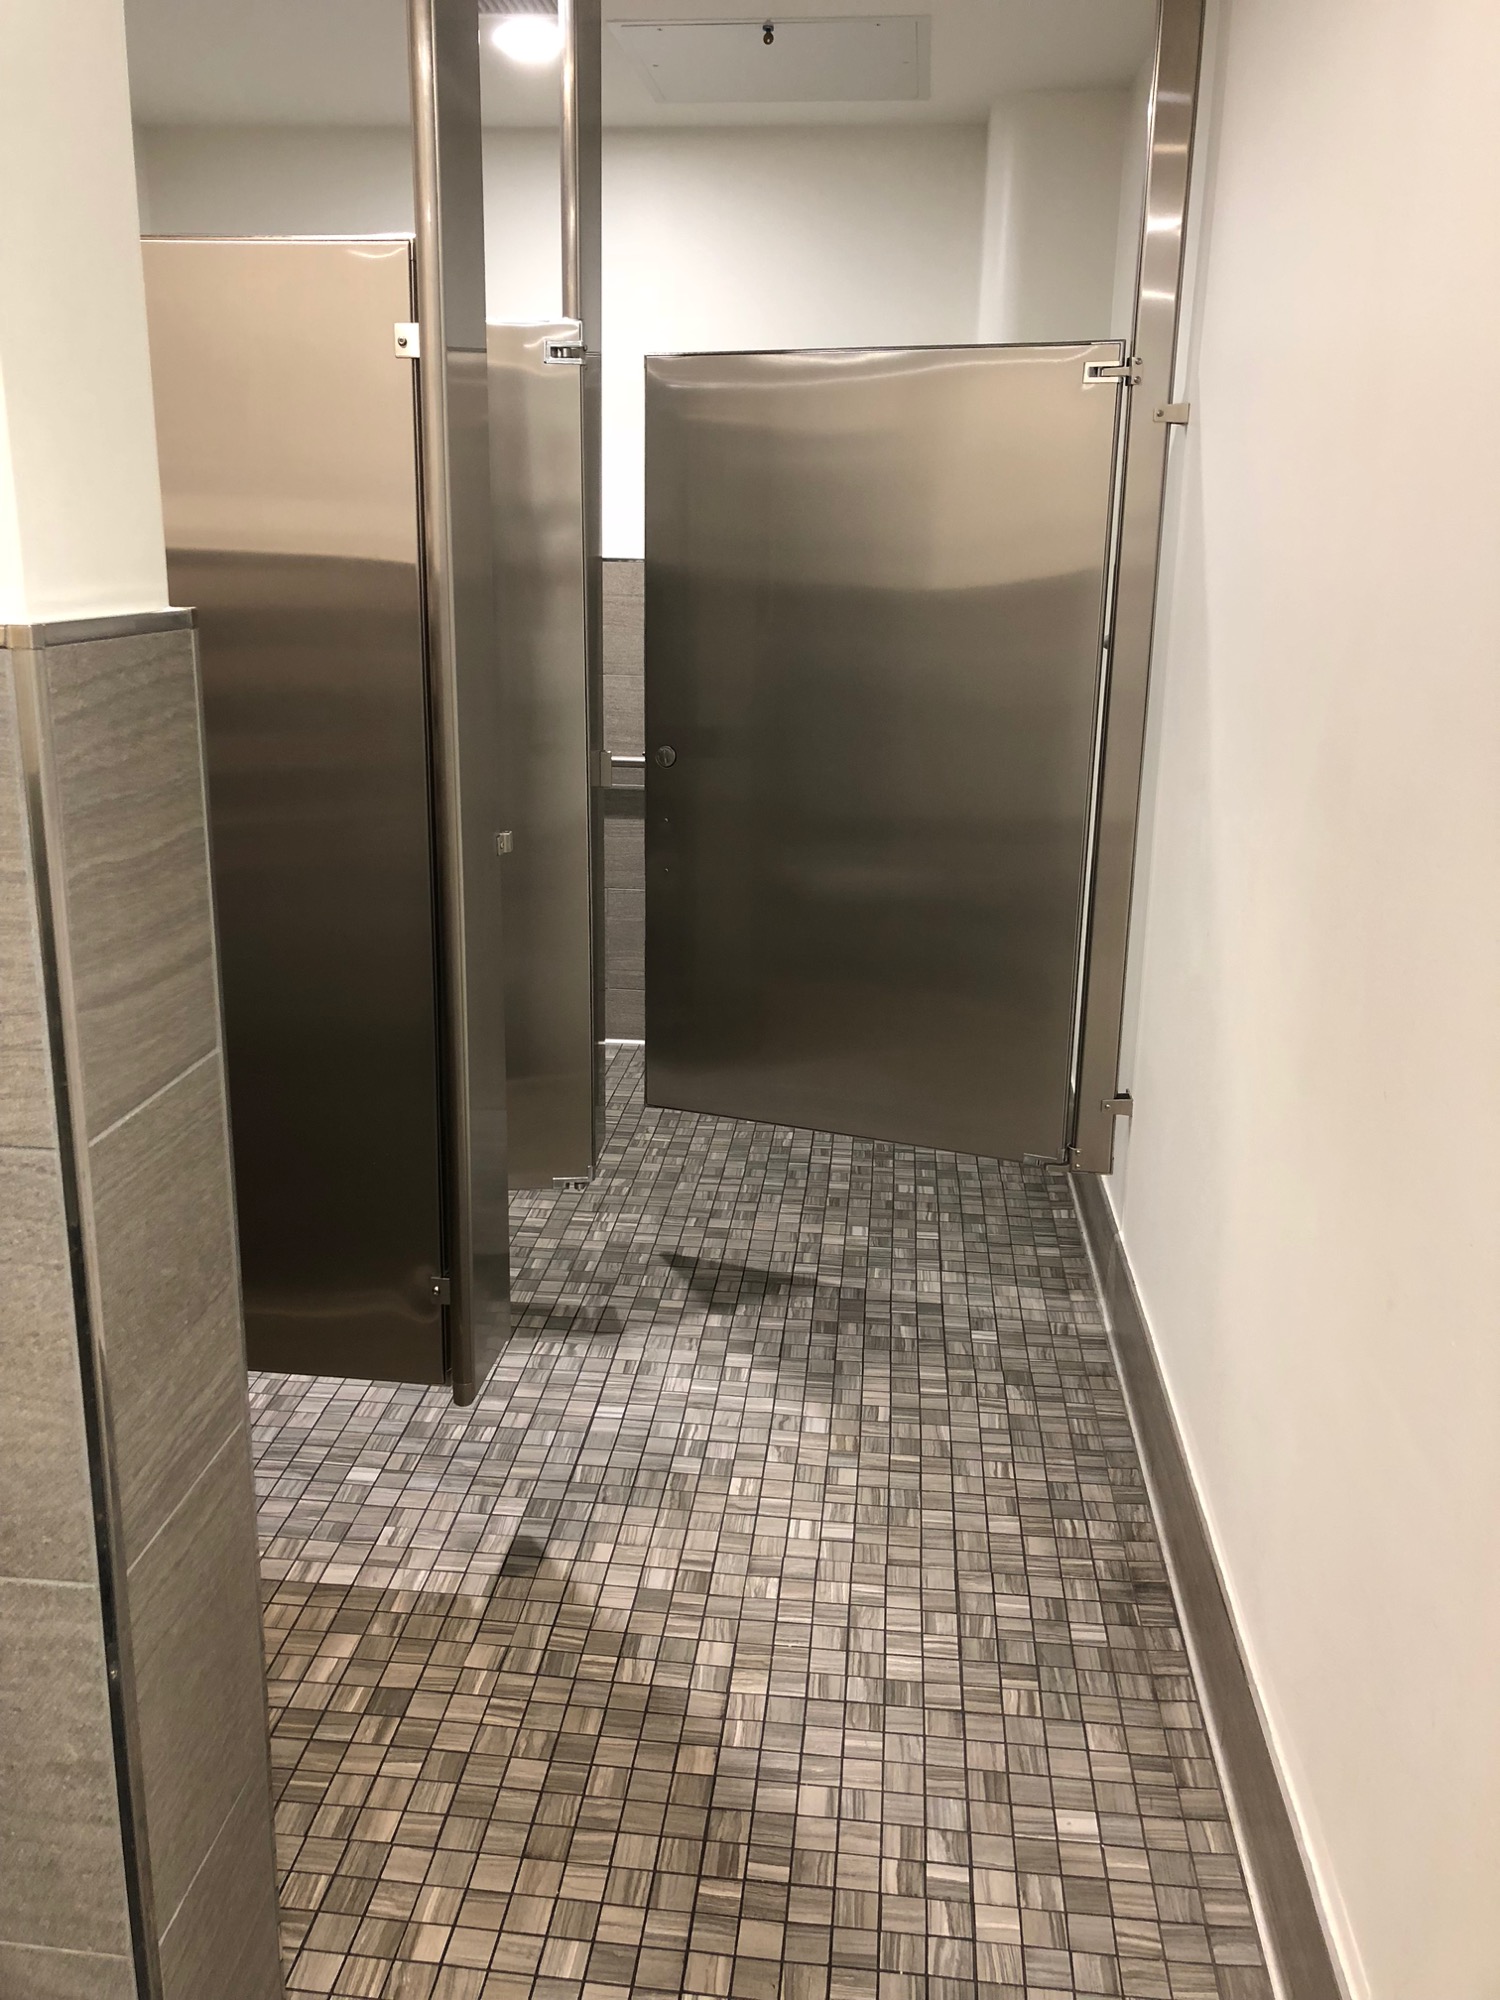 a bathroom with metal doors